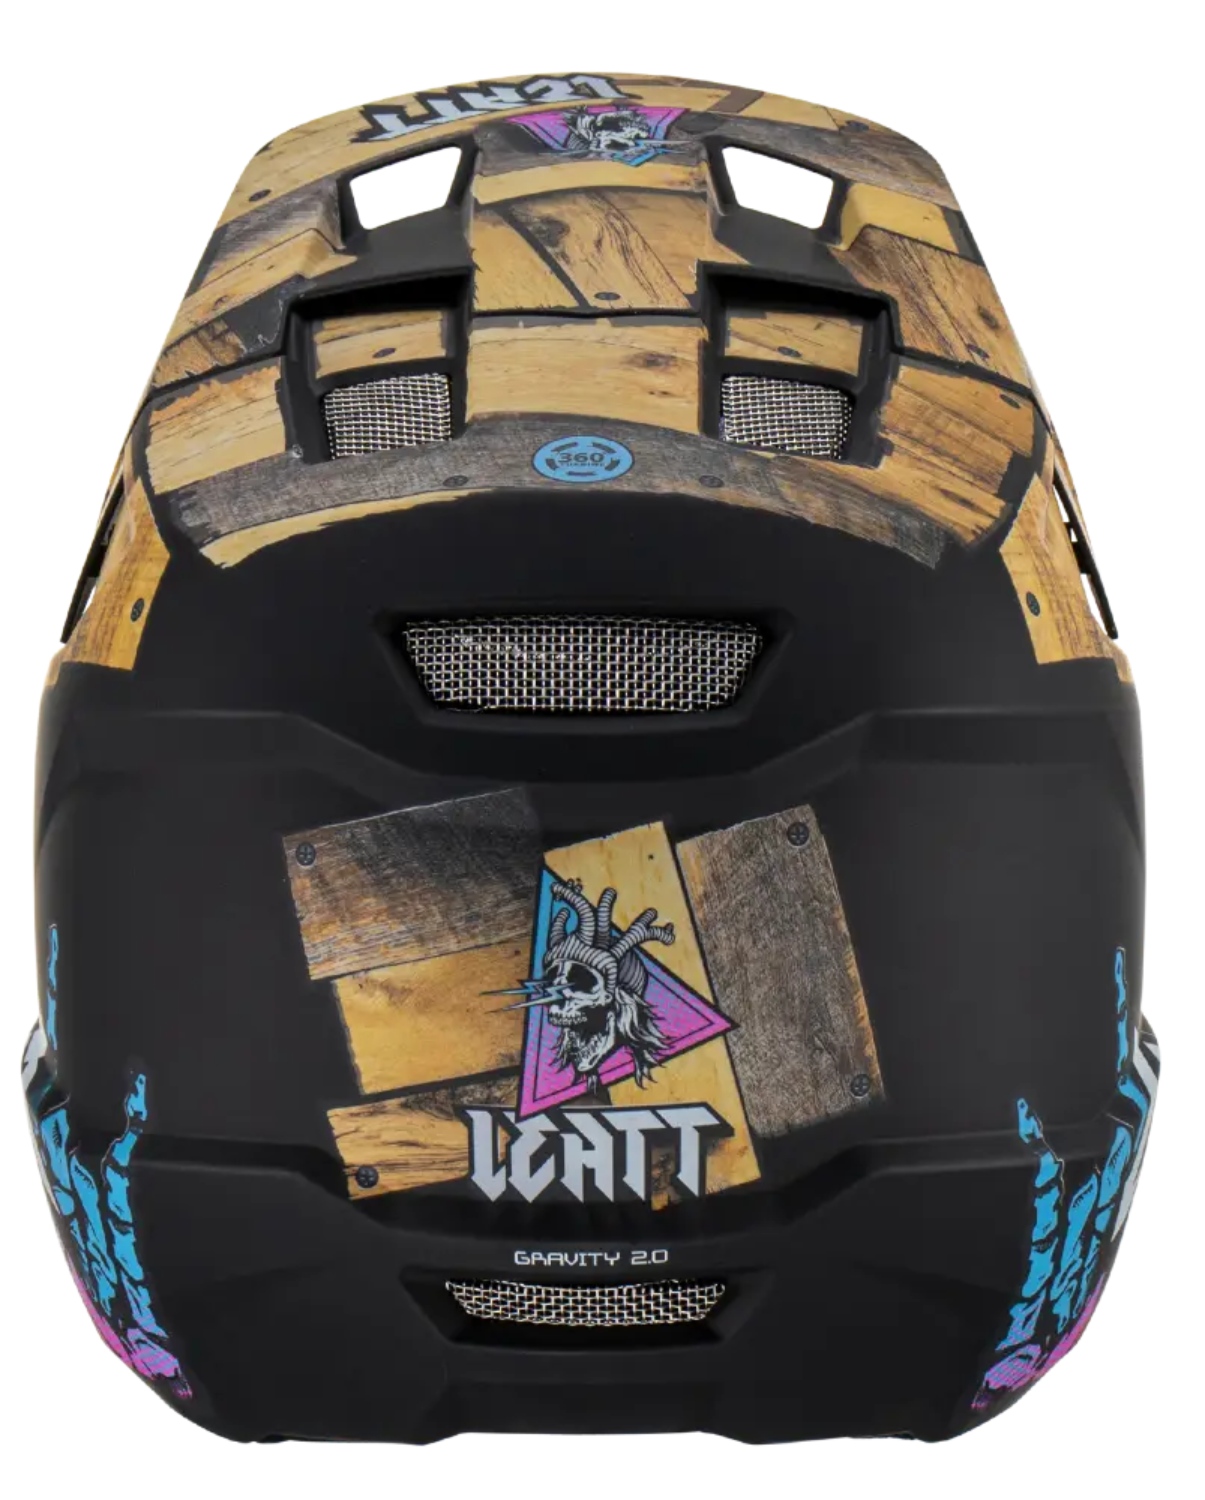 新品Leatt 2.0 V23 Gravity Woody MTB ヘルメット